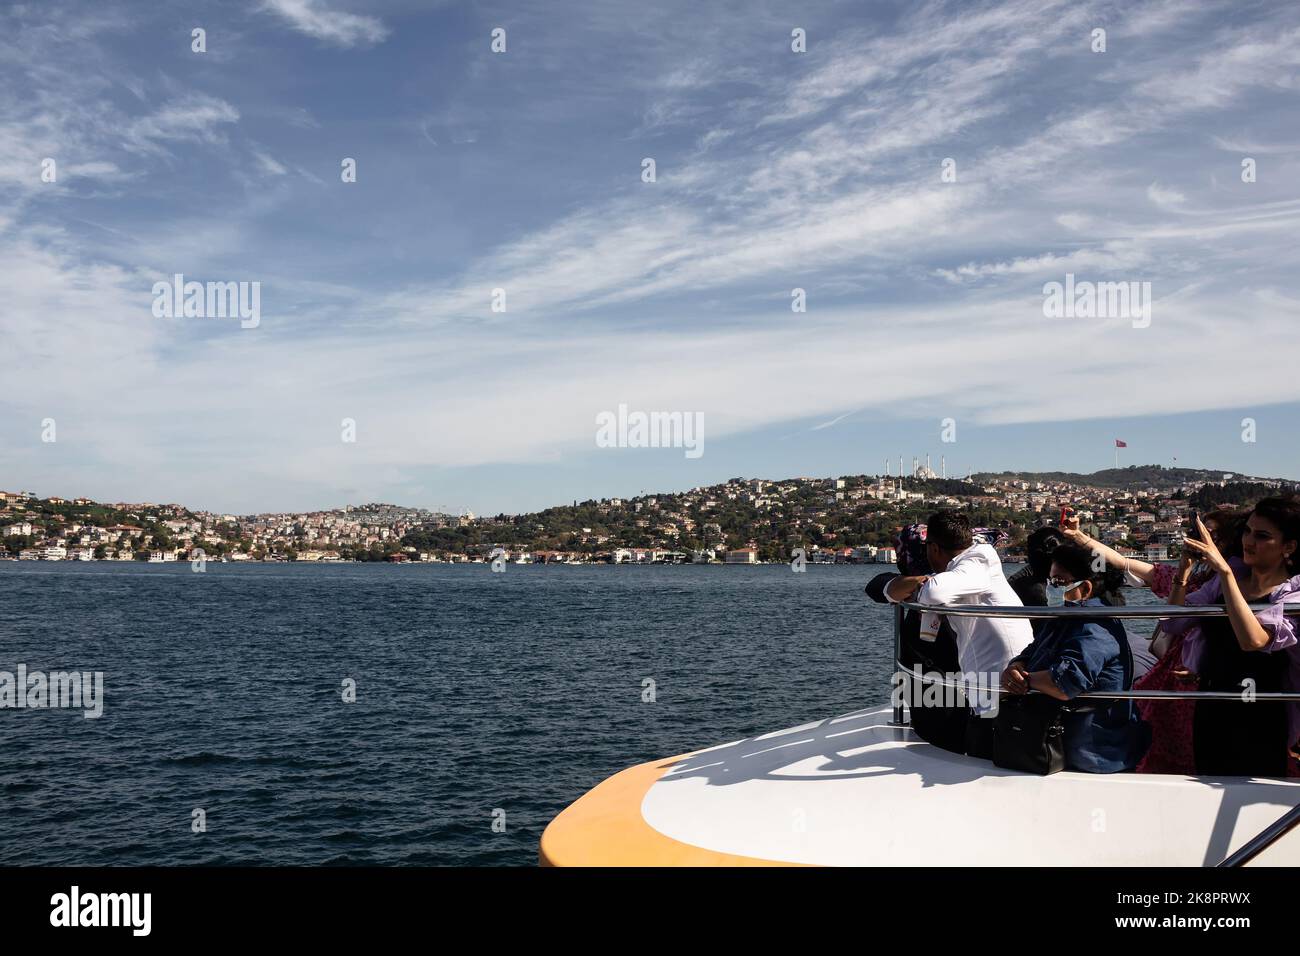 Blick auf Touristen auf einem Kreuzfahrtboot auf dem Bosporus und der asiatischen Seite Istanbuls. Es ist ein sonniger Sommertag. Stockfoto